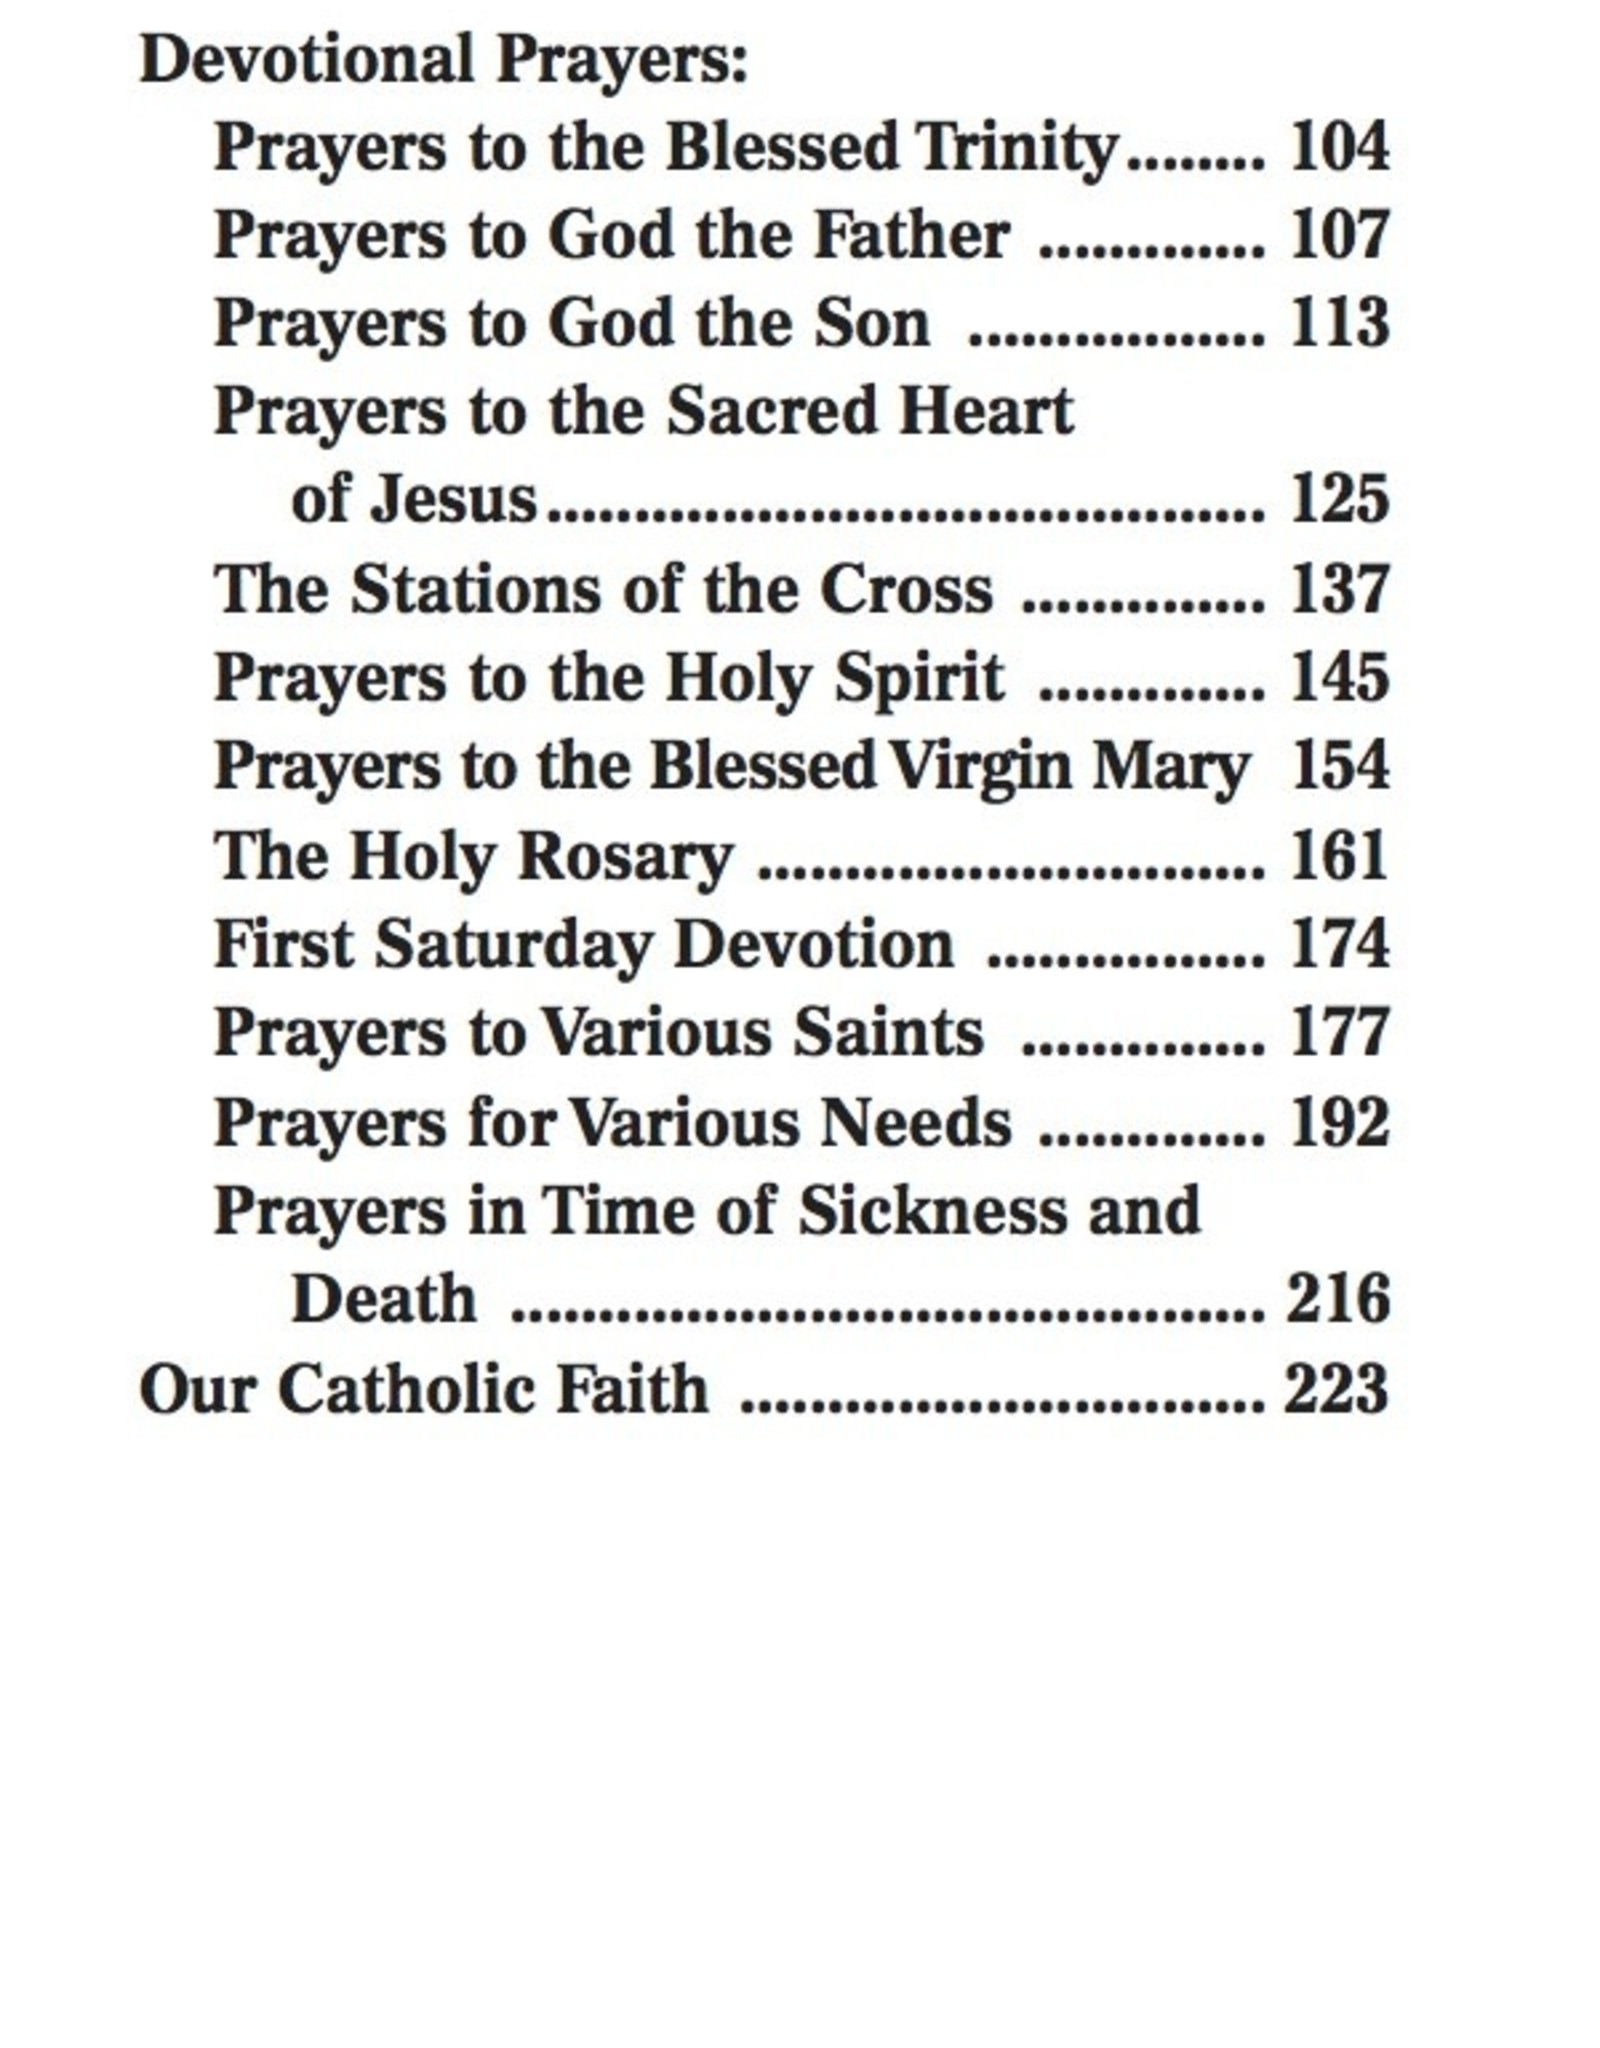 Catholic Book Publishing Catholic Book of Prayers (Brown Vinyl)